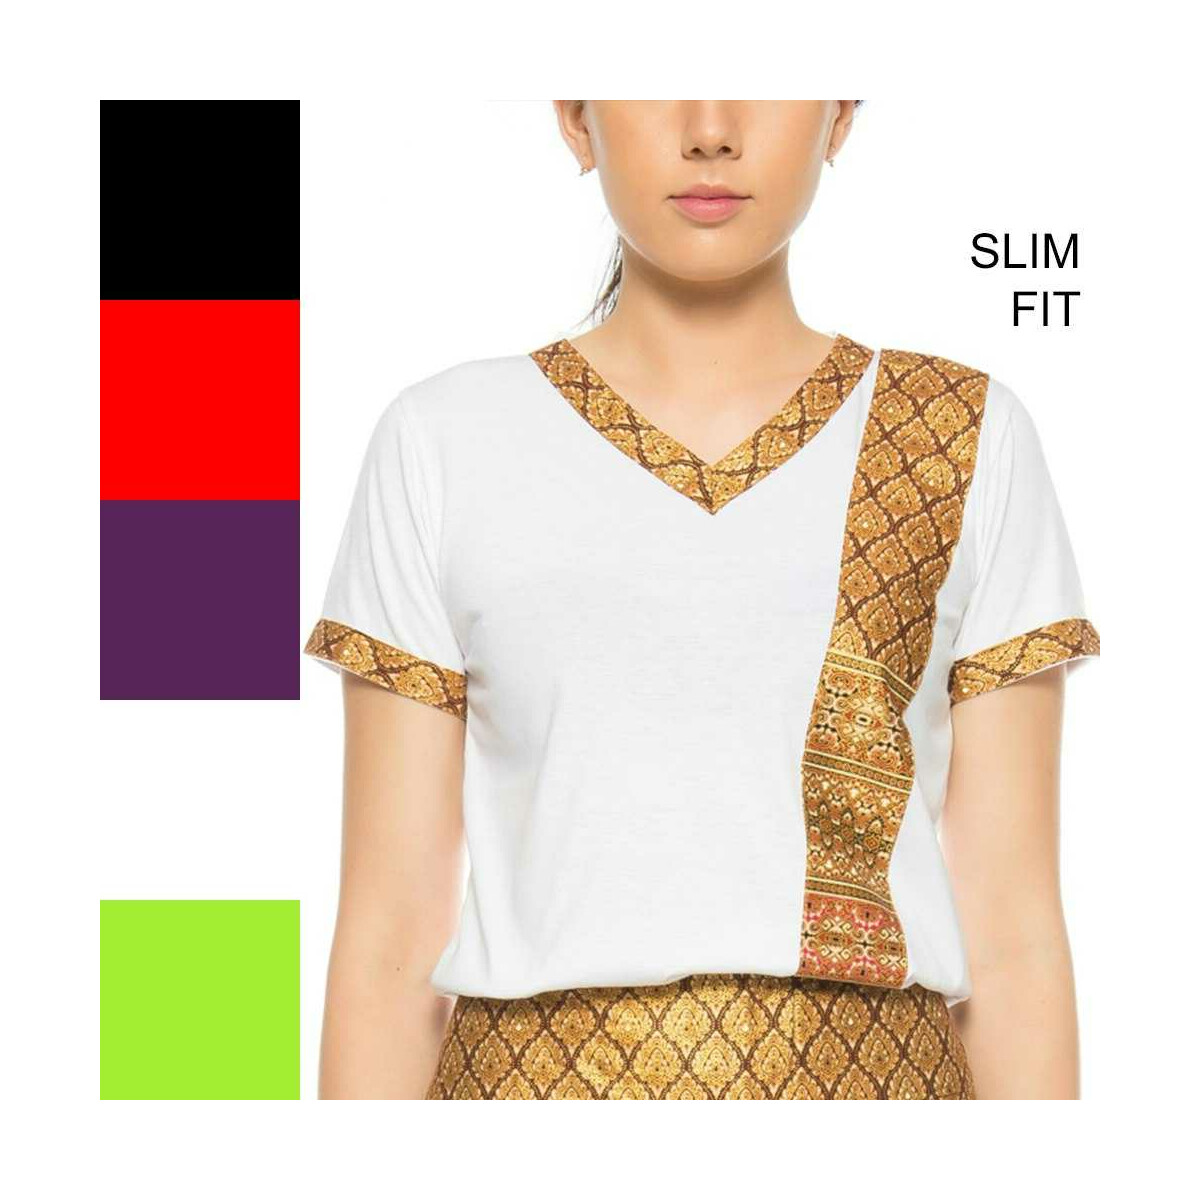 Thaimassage Damen T-Shirt mit traditionellem Muster, Slim...